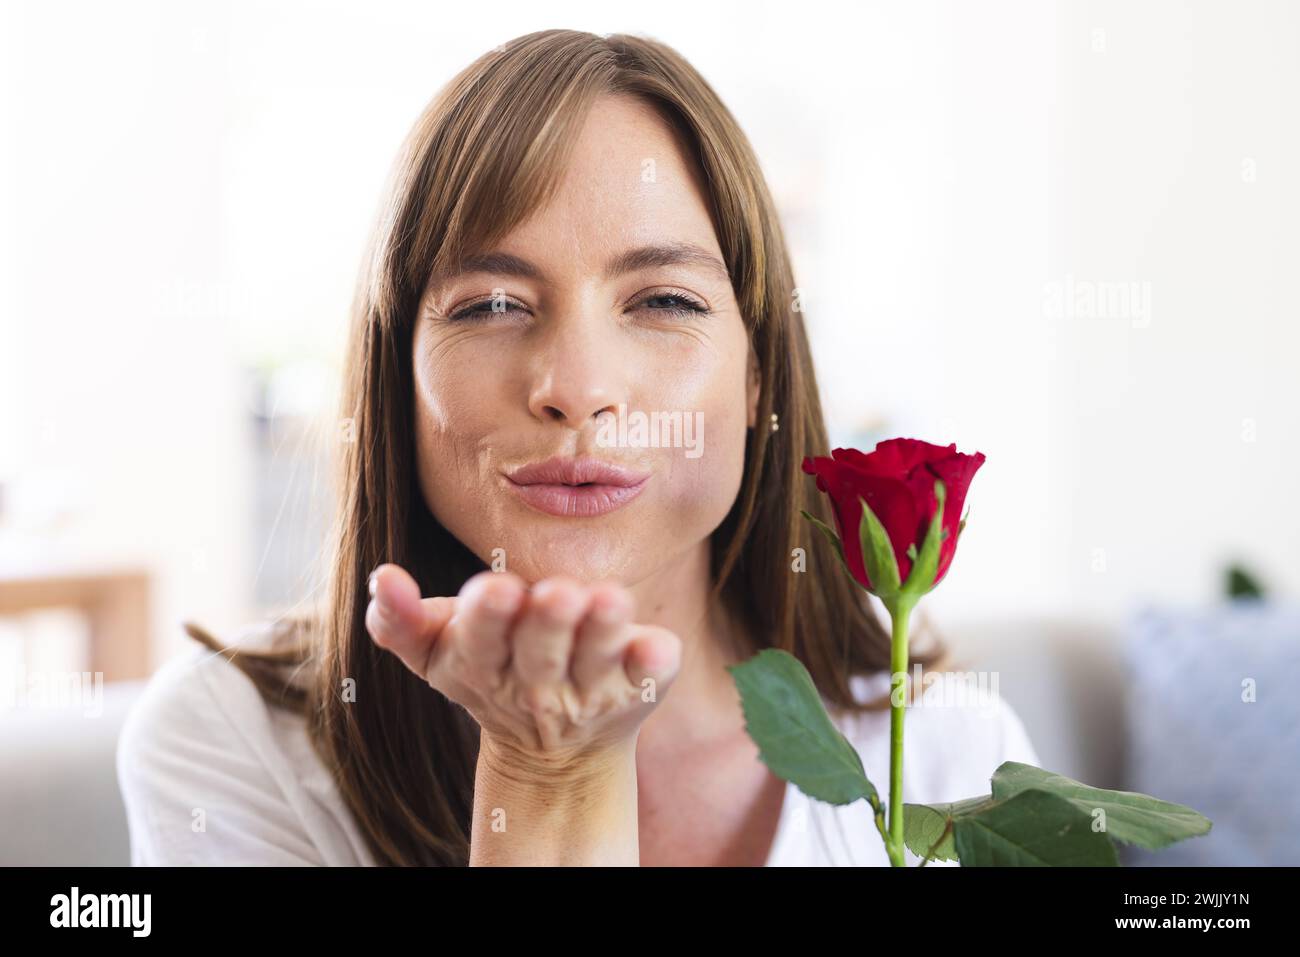 Eine weiße Frau mittleren Alters bläst spielerisch einen Kuss, während sie eine rote Rose hält Stockfoto